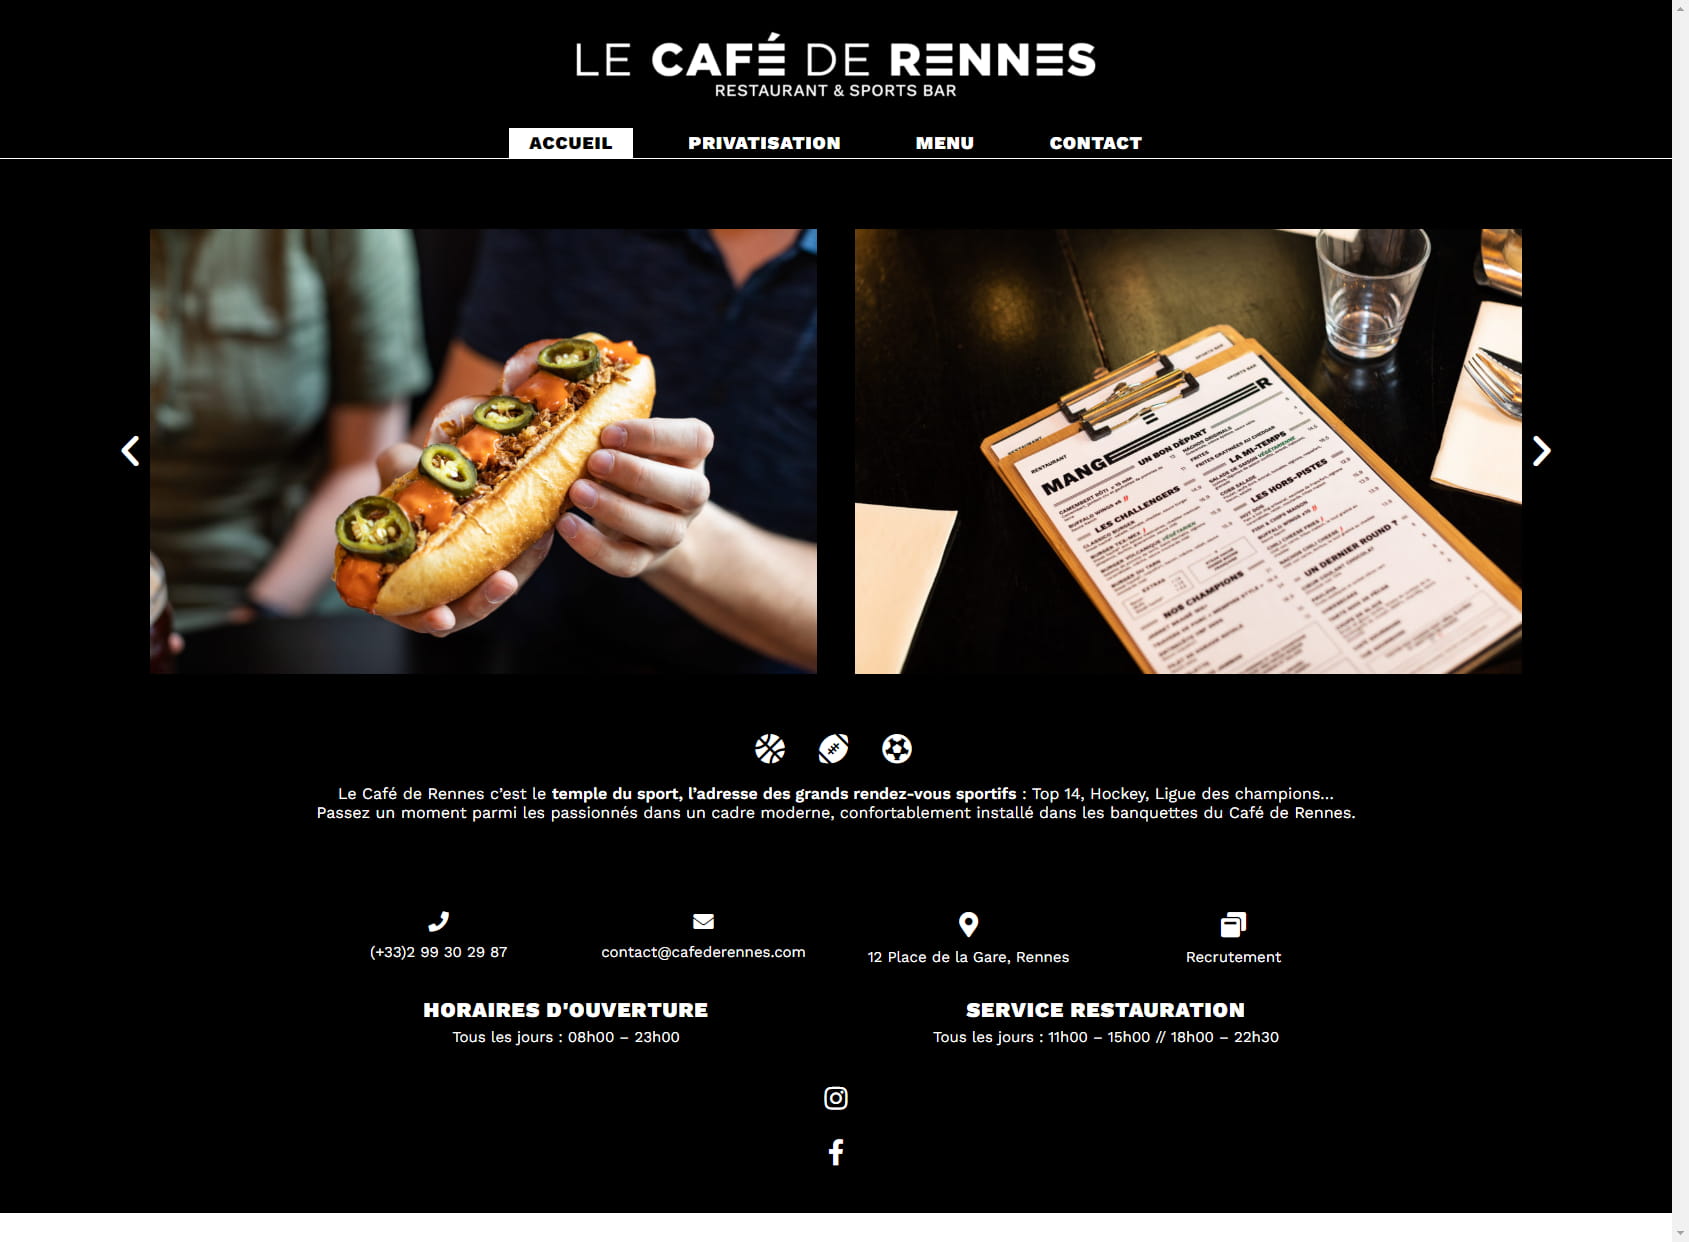 The Café de Rennes